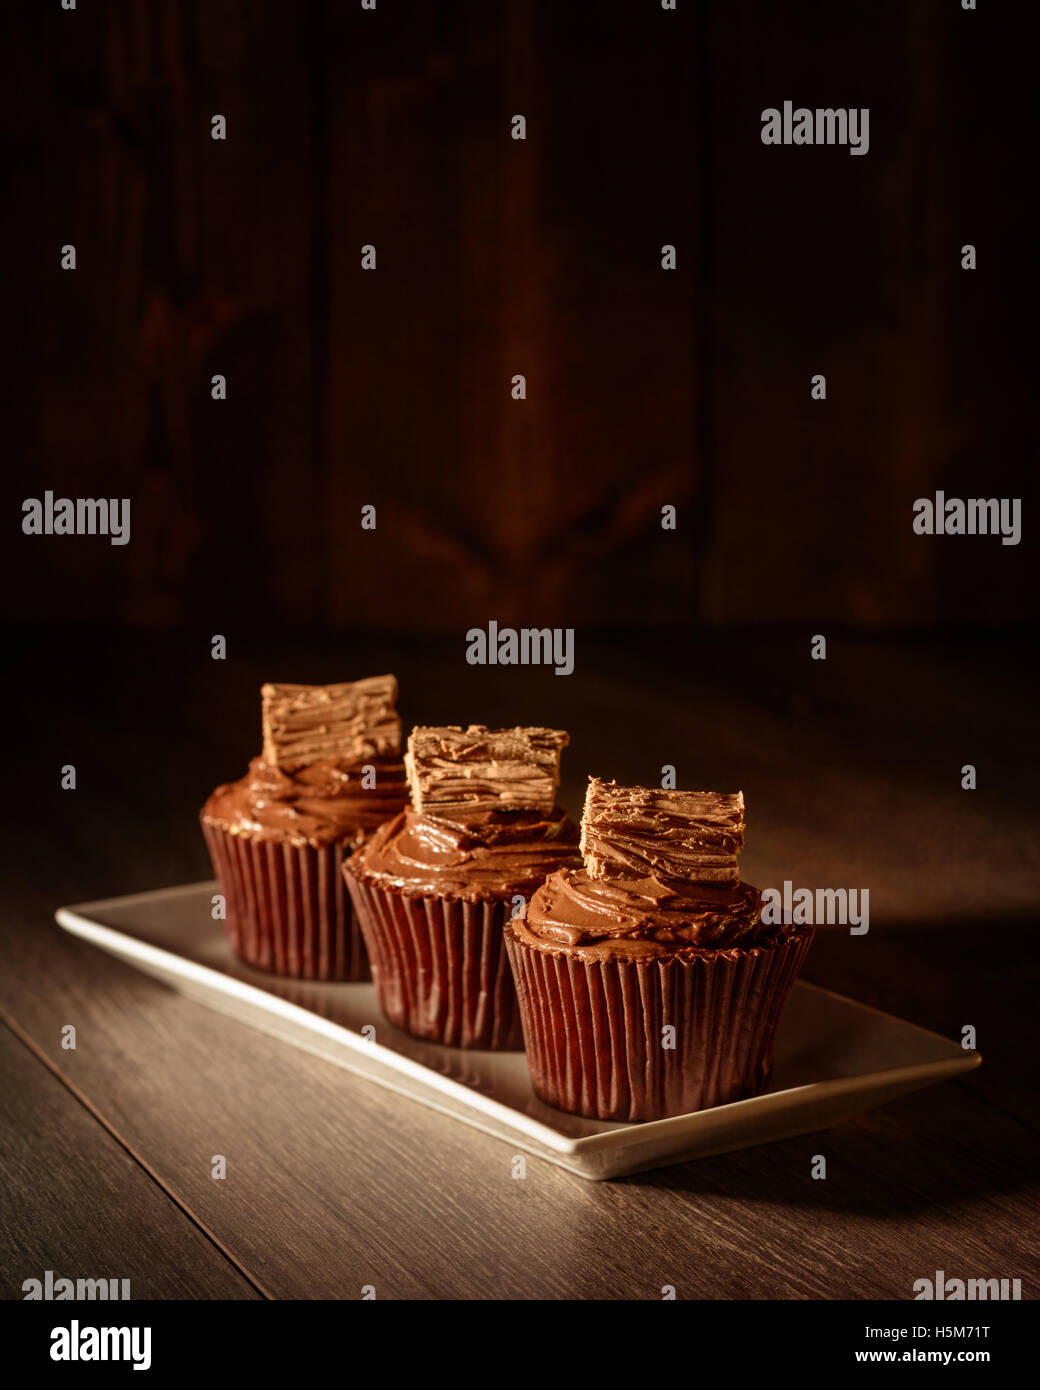 Drei Schokolade Kuchen verziert mit Flocken - Fokus auf vorderen Kuchen Stockfoto